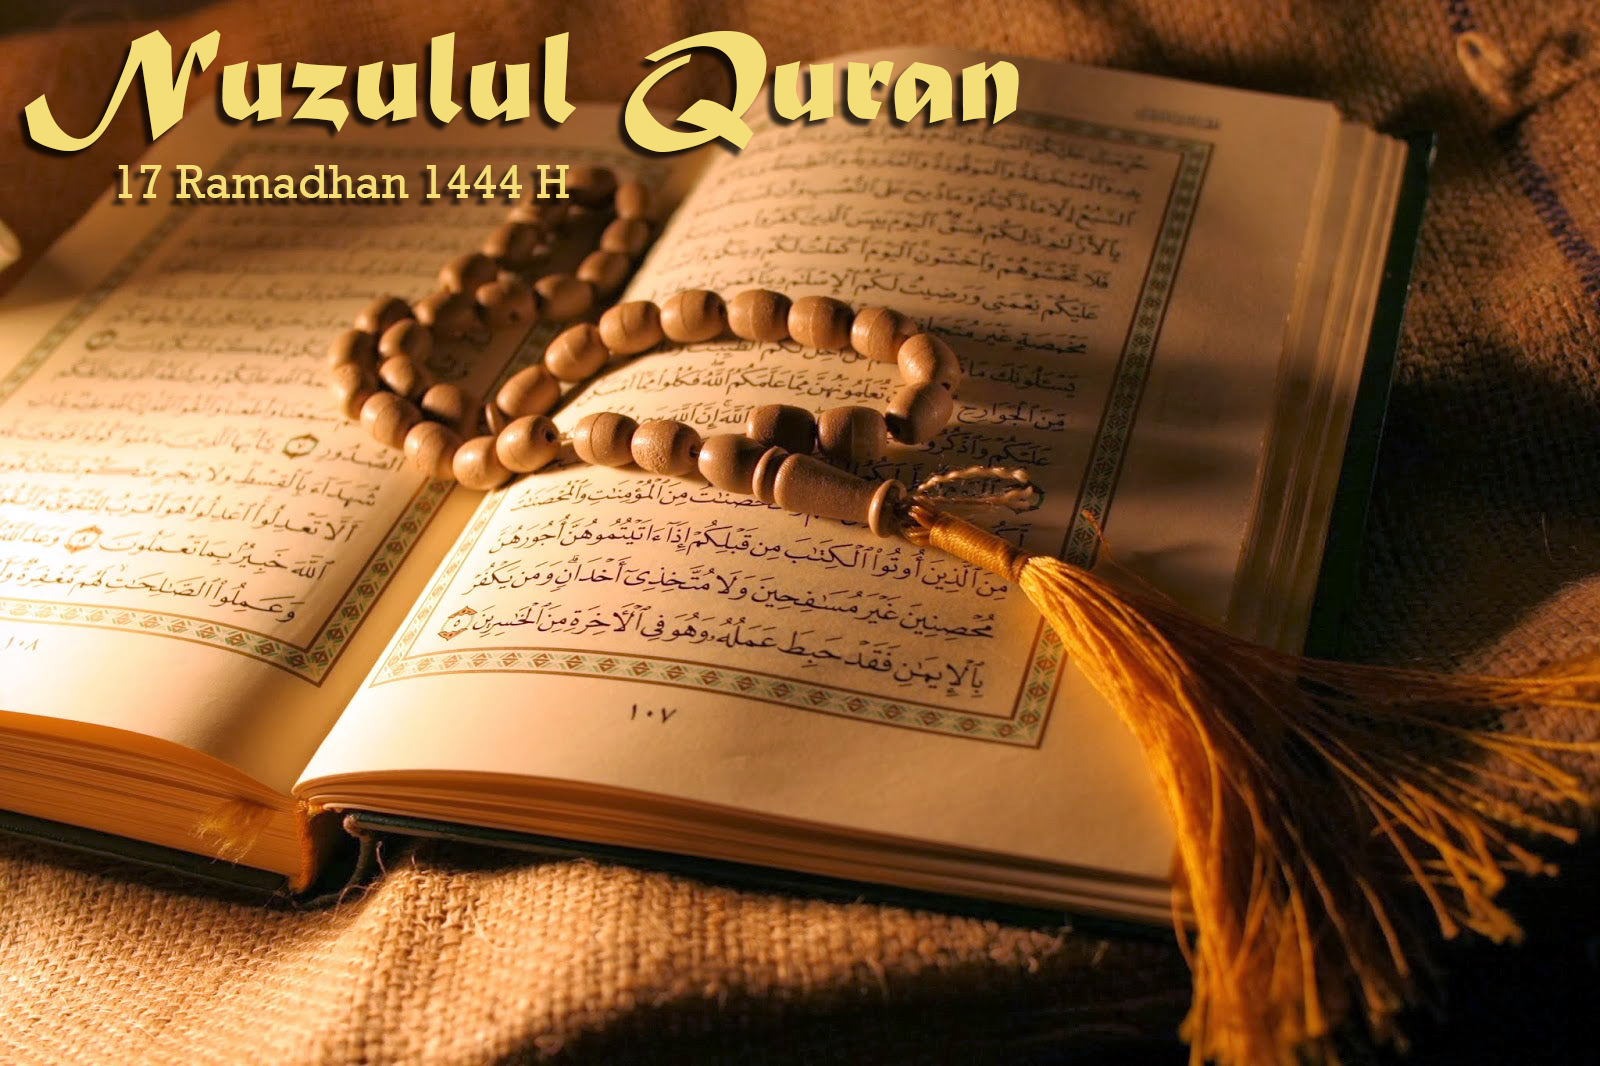 Nuzulul Quran